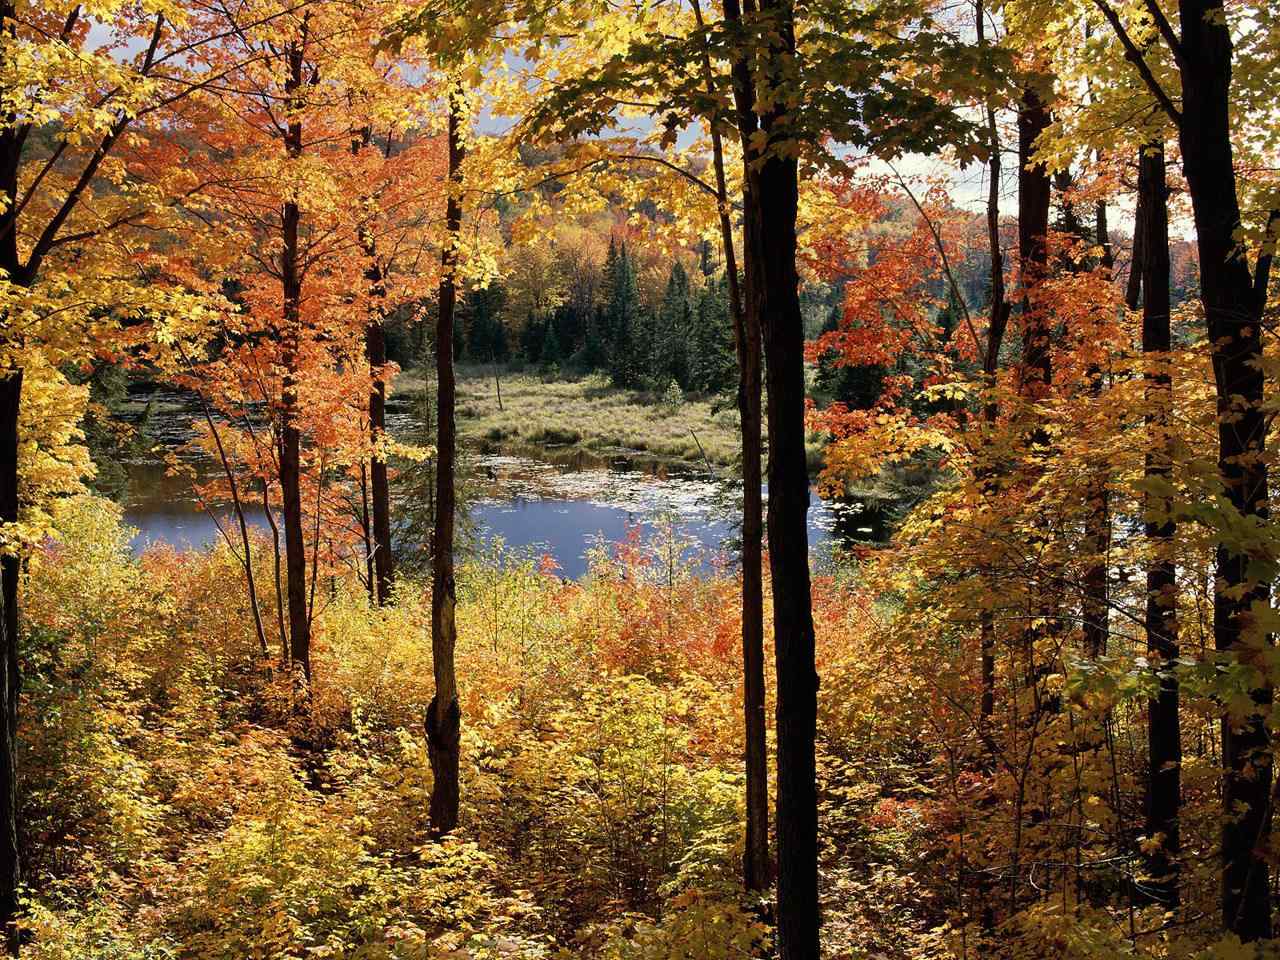 唯美的秋日森林风景壁纸